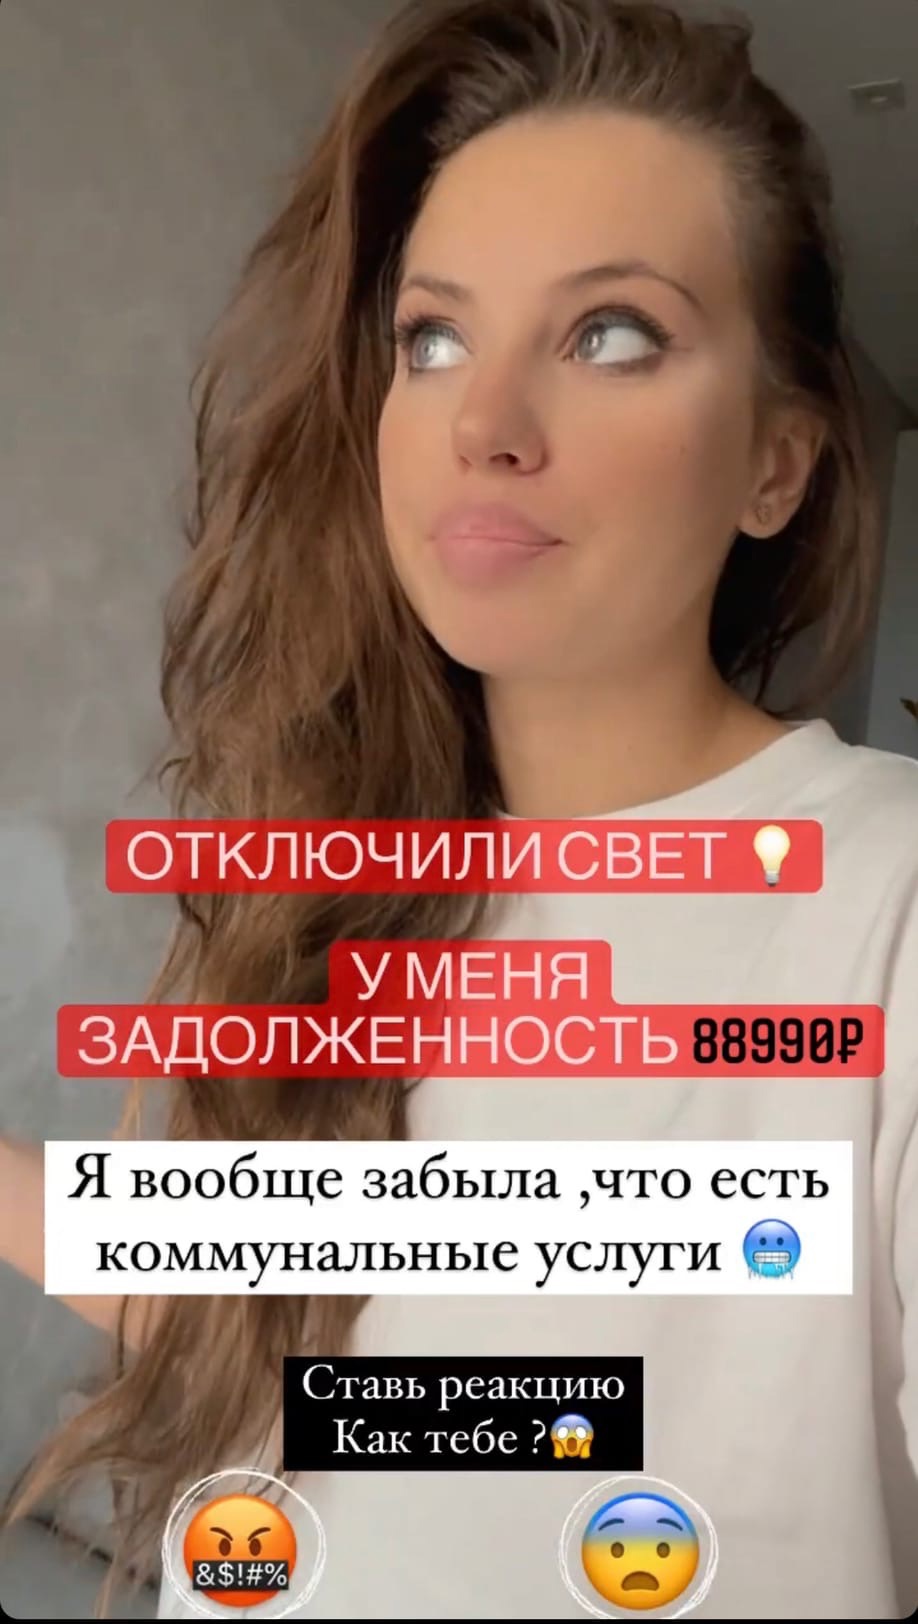 "Позор года": Саша Артемова задолжала за коммунальные услуги почти 90 тысяч рублей